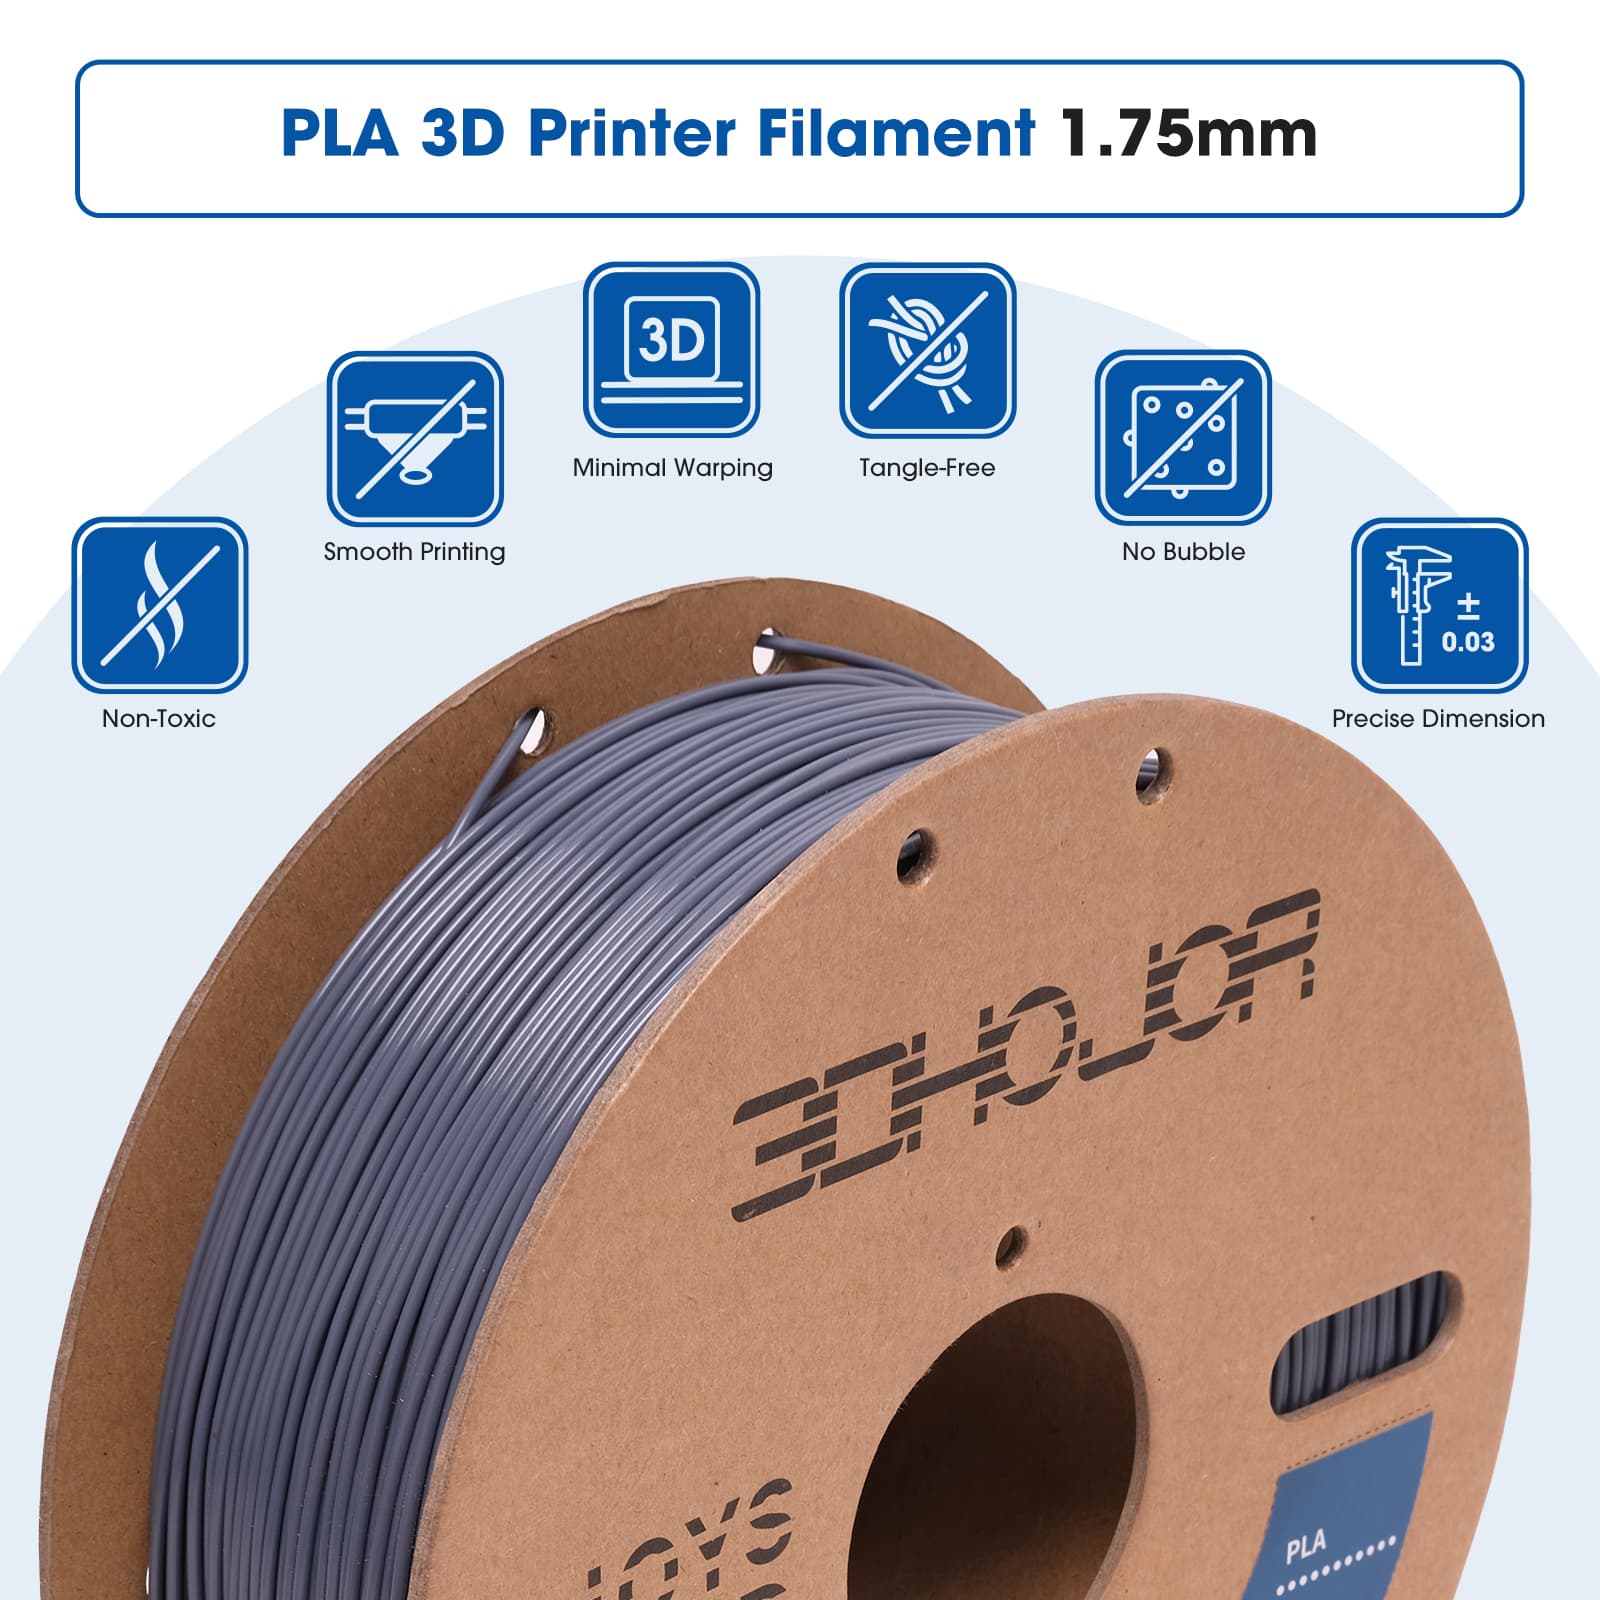 Creality 3D PLA Filament 1.75mm 1KG Spool for 3D Printer - Grey